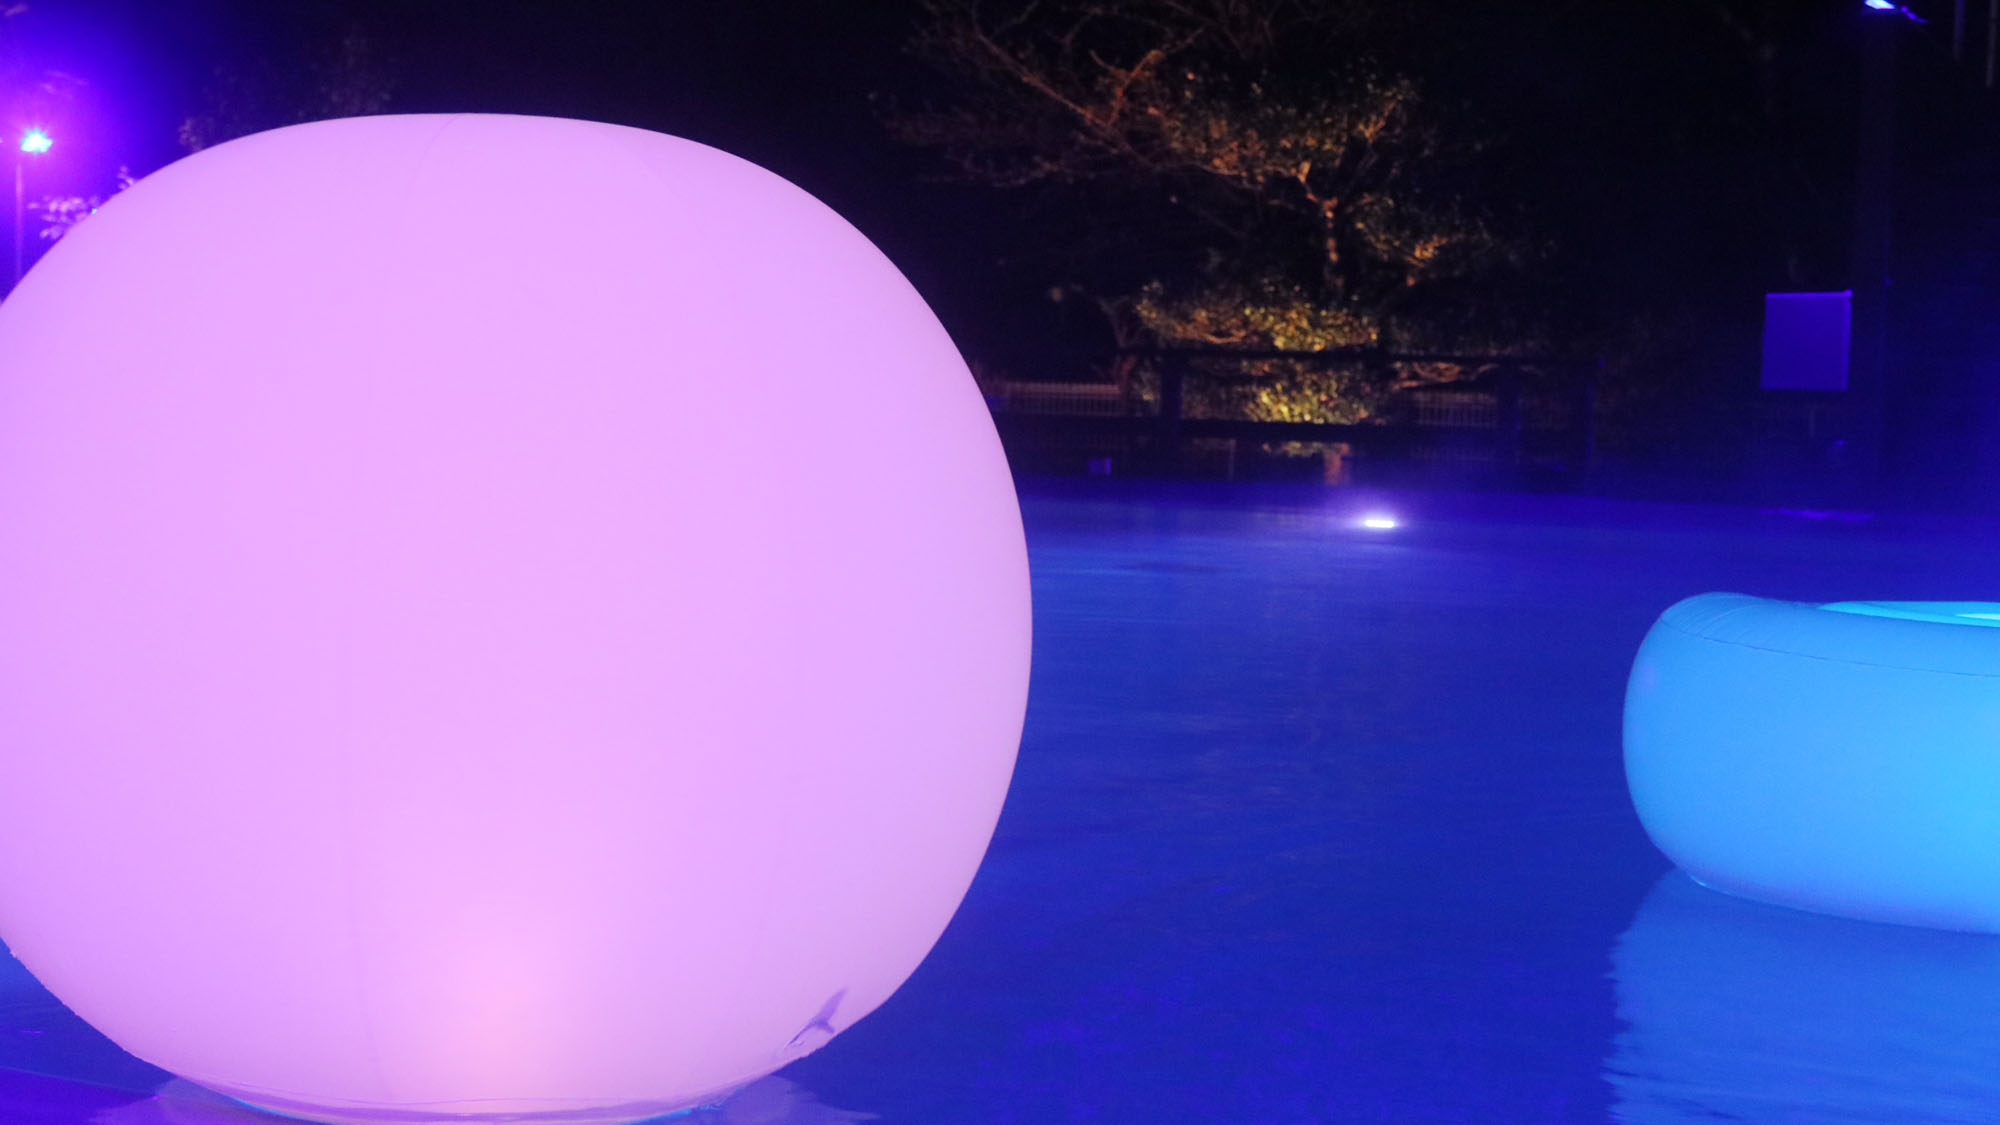 ナイトプール -Night pool-◆夜になるとカラーライトによる幻想的な姿に